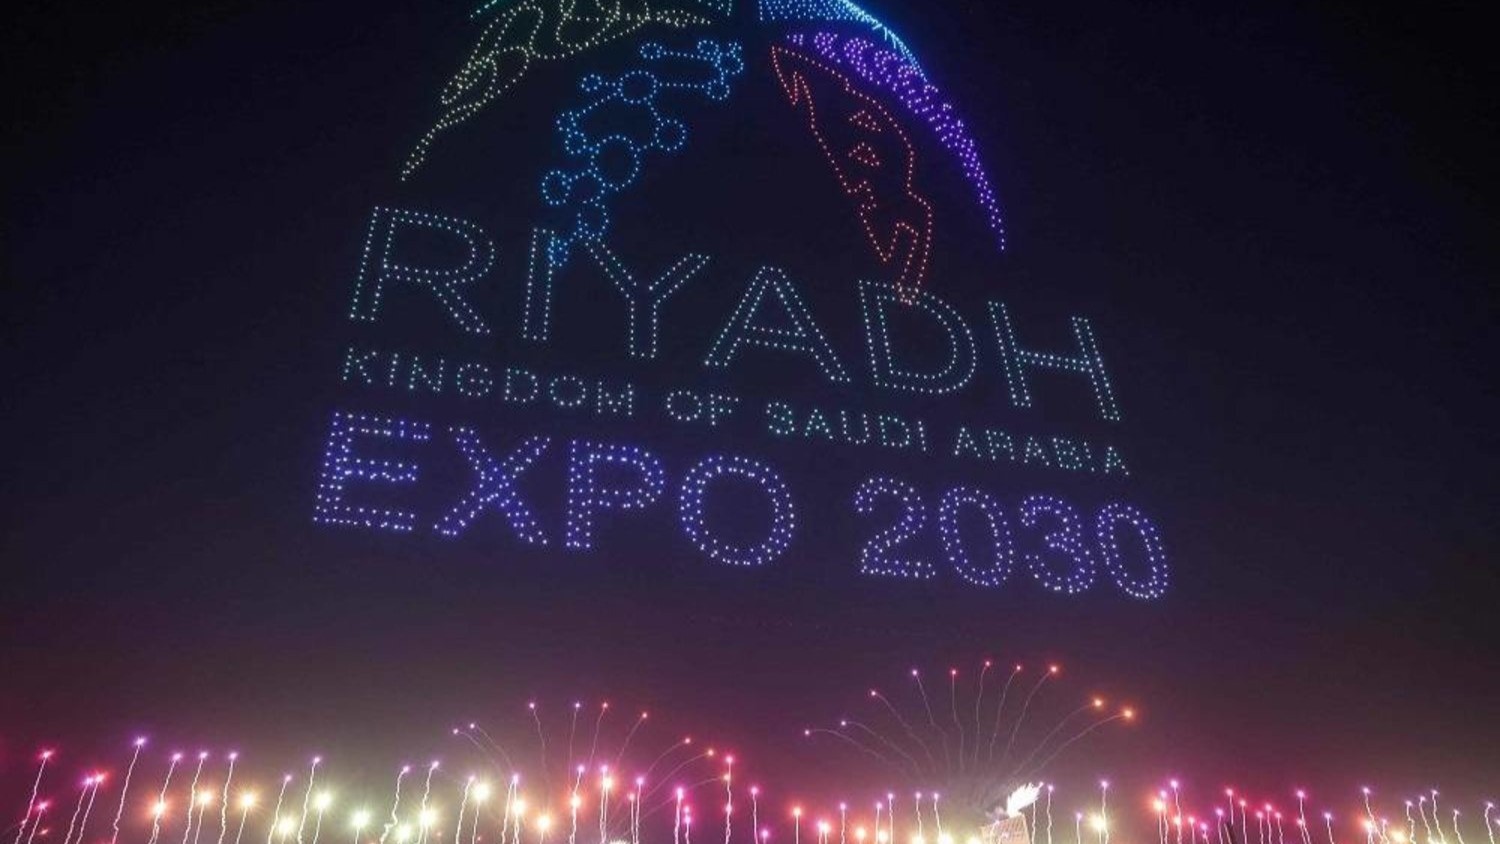 يتم تنفيذ عرض ضوئي تم إنشاؤه باستخدام طائرات بدون طيار بعد فوز الرياض بحق استضافة معرض إكسبو العالمي 2030 في مركز الملك عبد الله المالي في الرياض، في 28 نوفمبر 2023